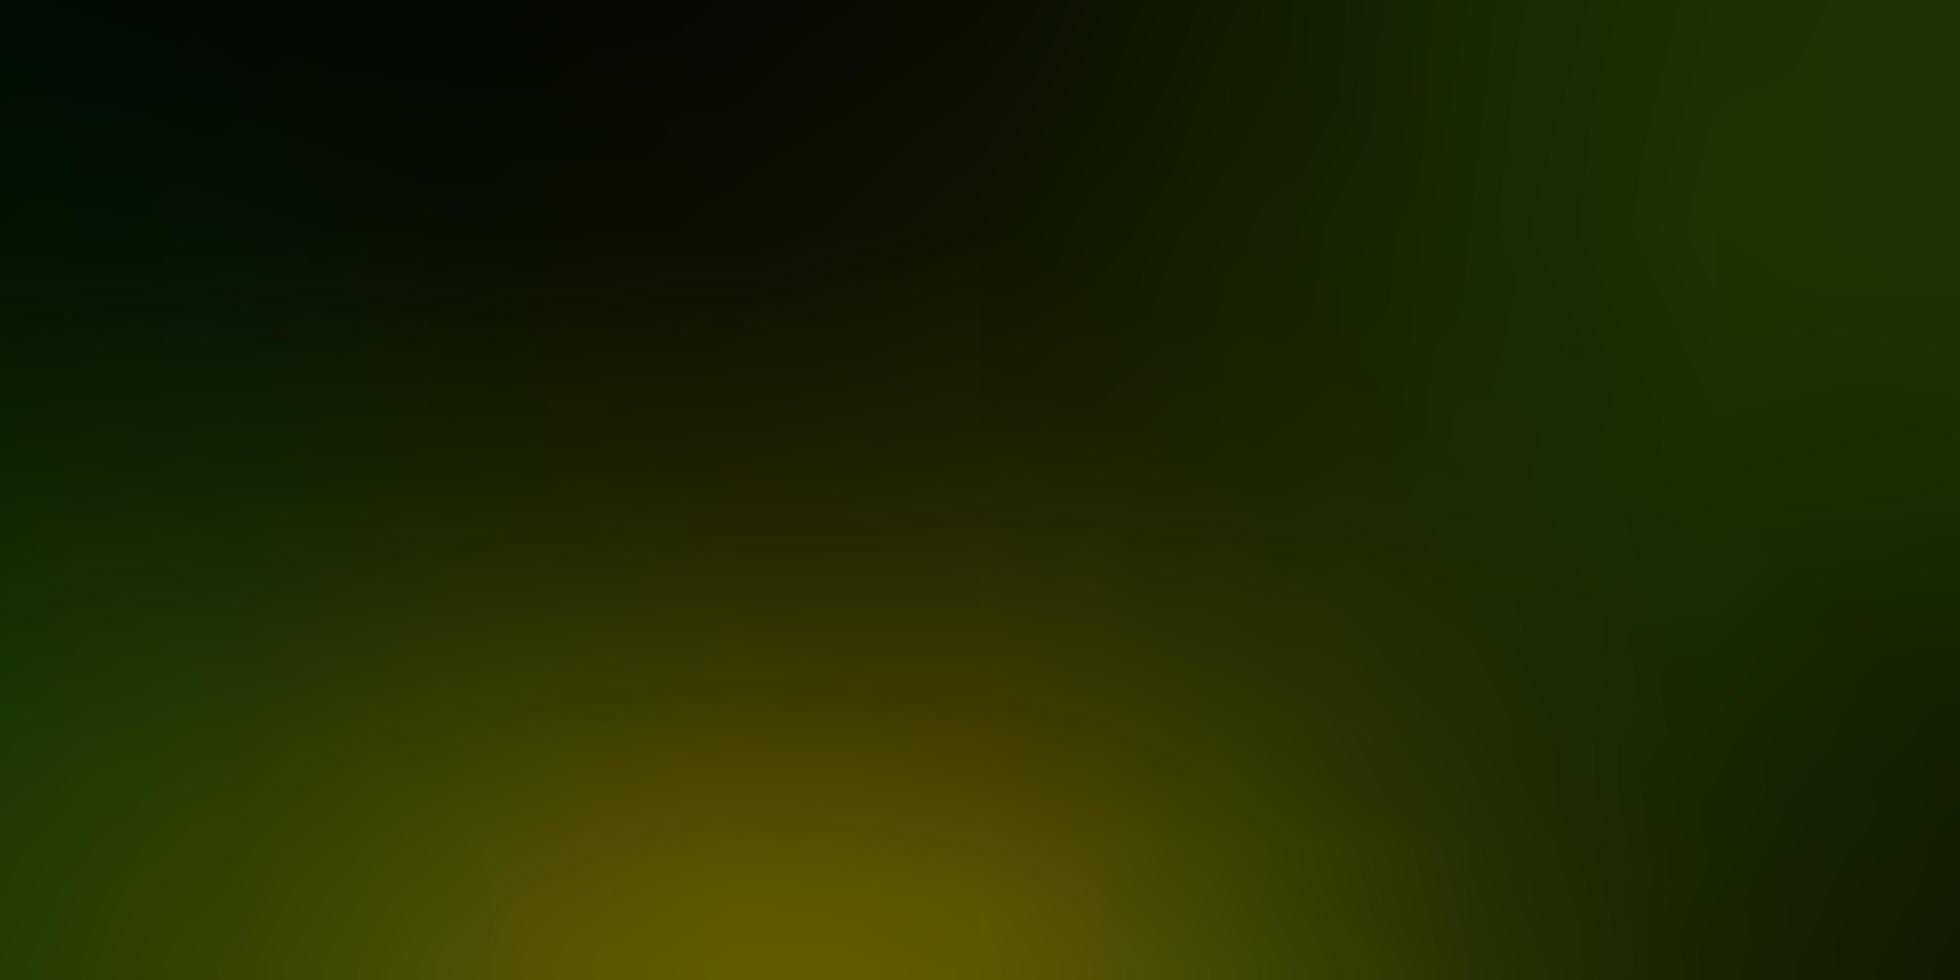 fond abstrait coloré de vecteur vert foncé, jaune. illustration abstraite avec un design flou dégradé. arrière-plan pour les téléphones portables.